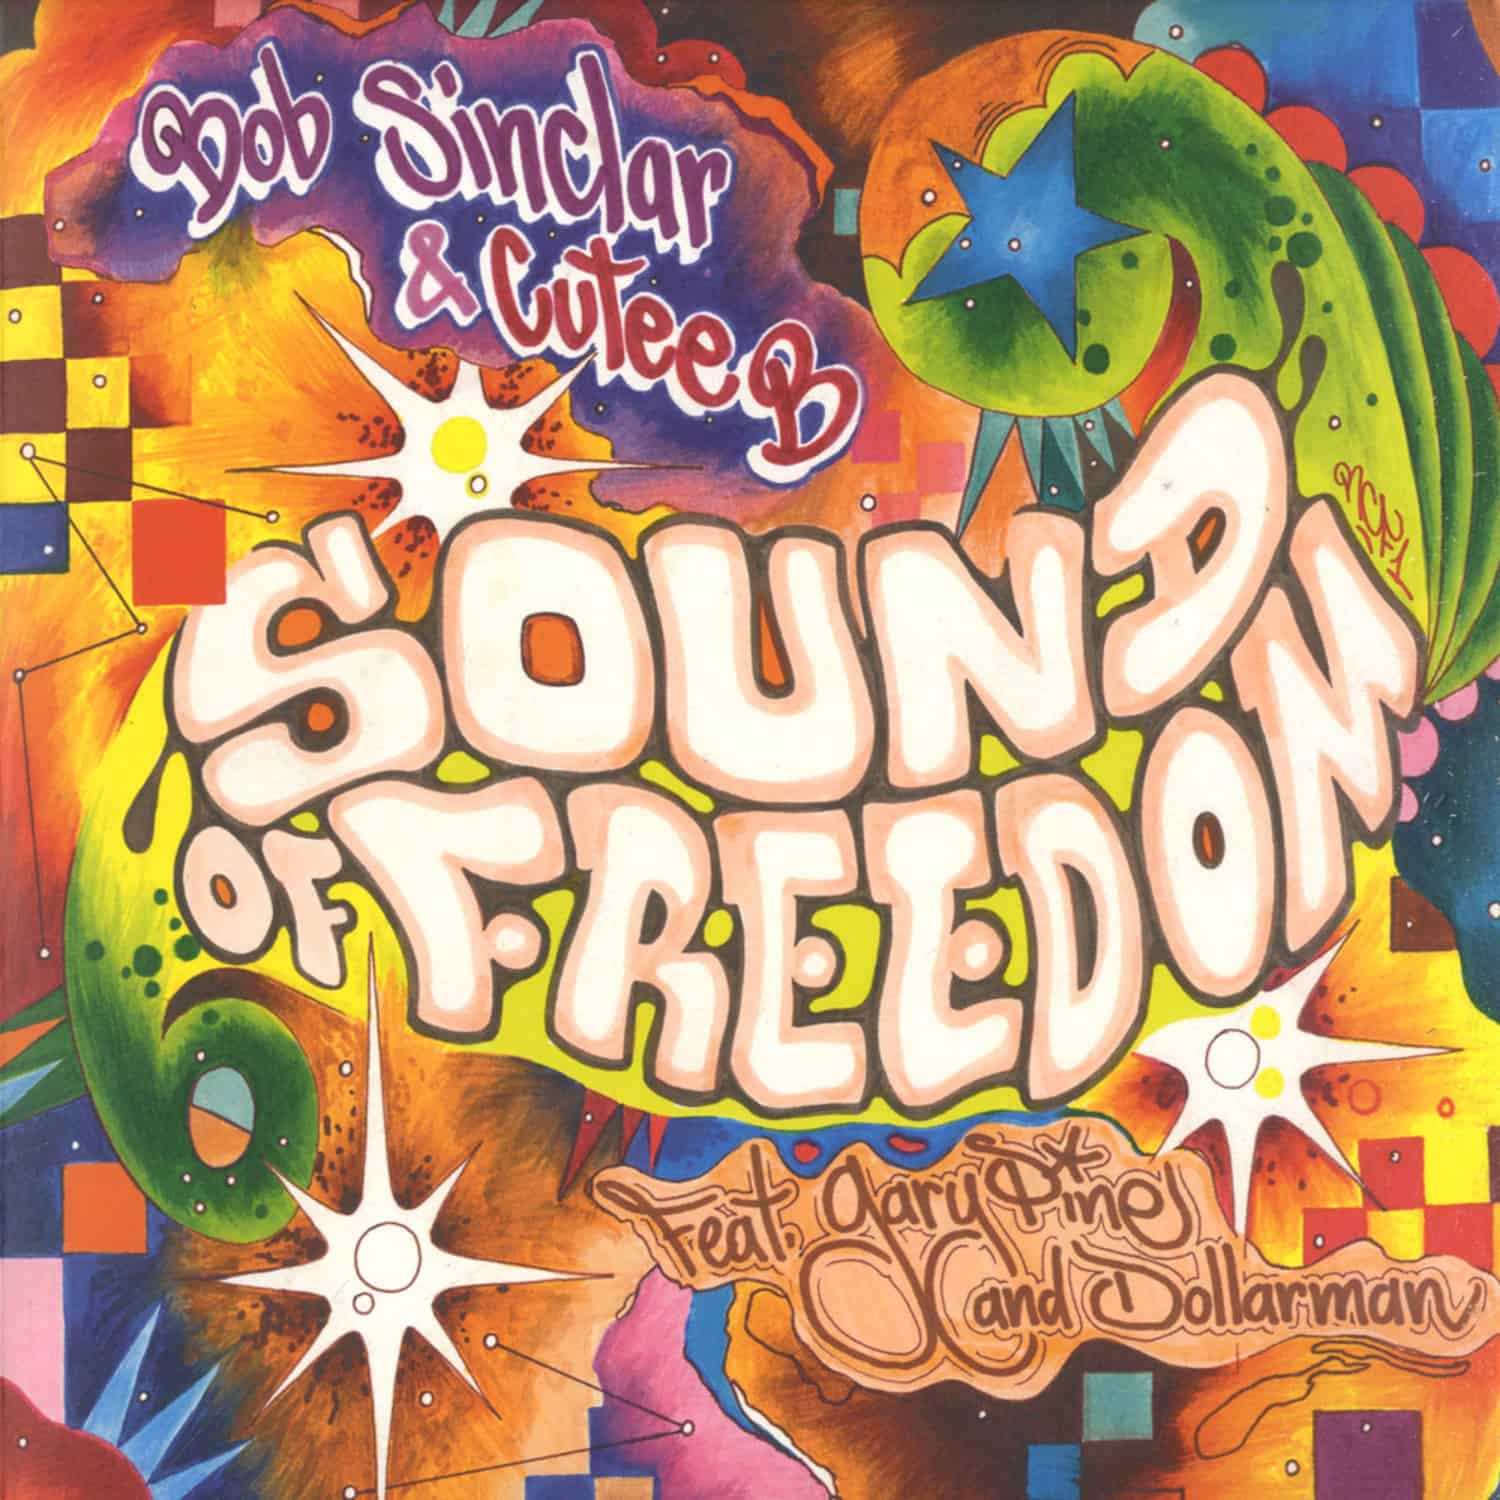 Bob Sinclar & Cutee B - SOUND OF FREEDOM / EVERYBODY MOVIN